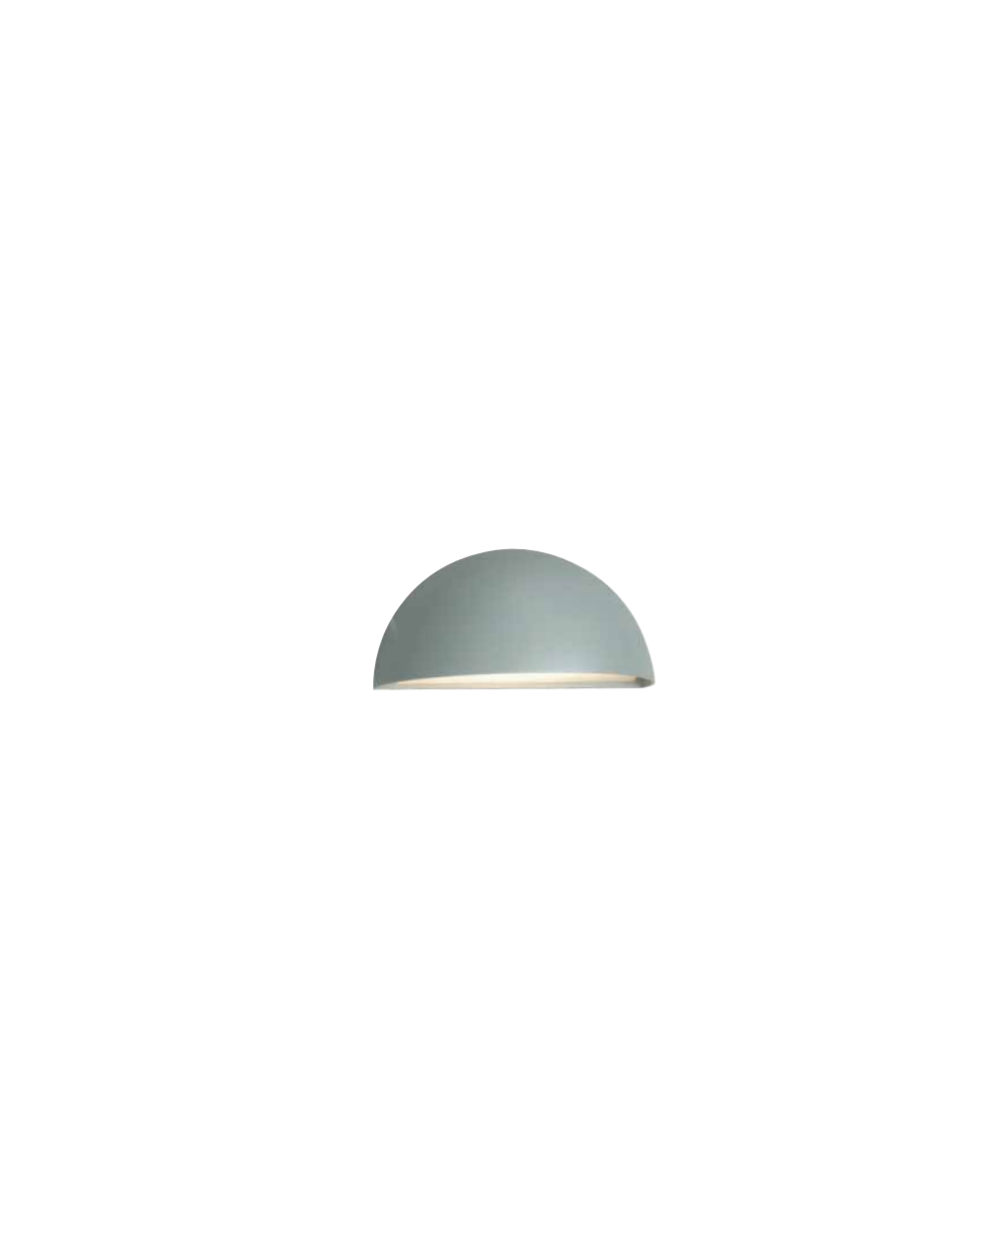 Lampa ścienna / kinkiet Halden - Norlys oprawa zewnętrzna nowoczesna aluminium grafit lub biała